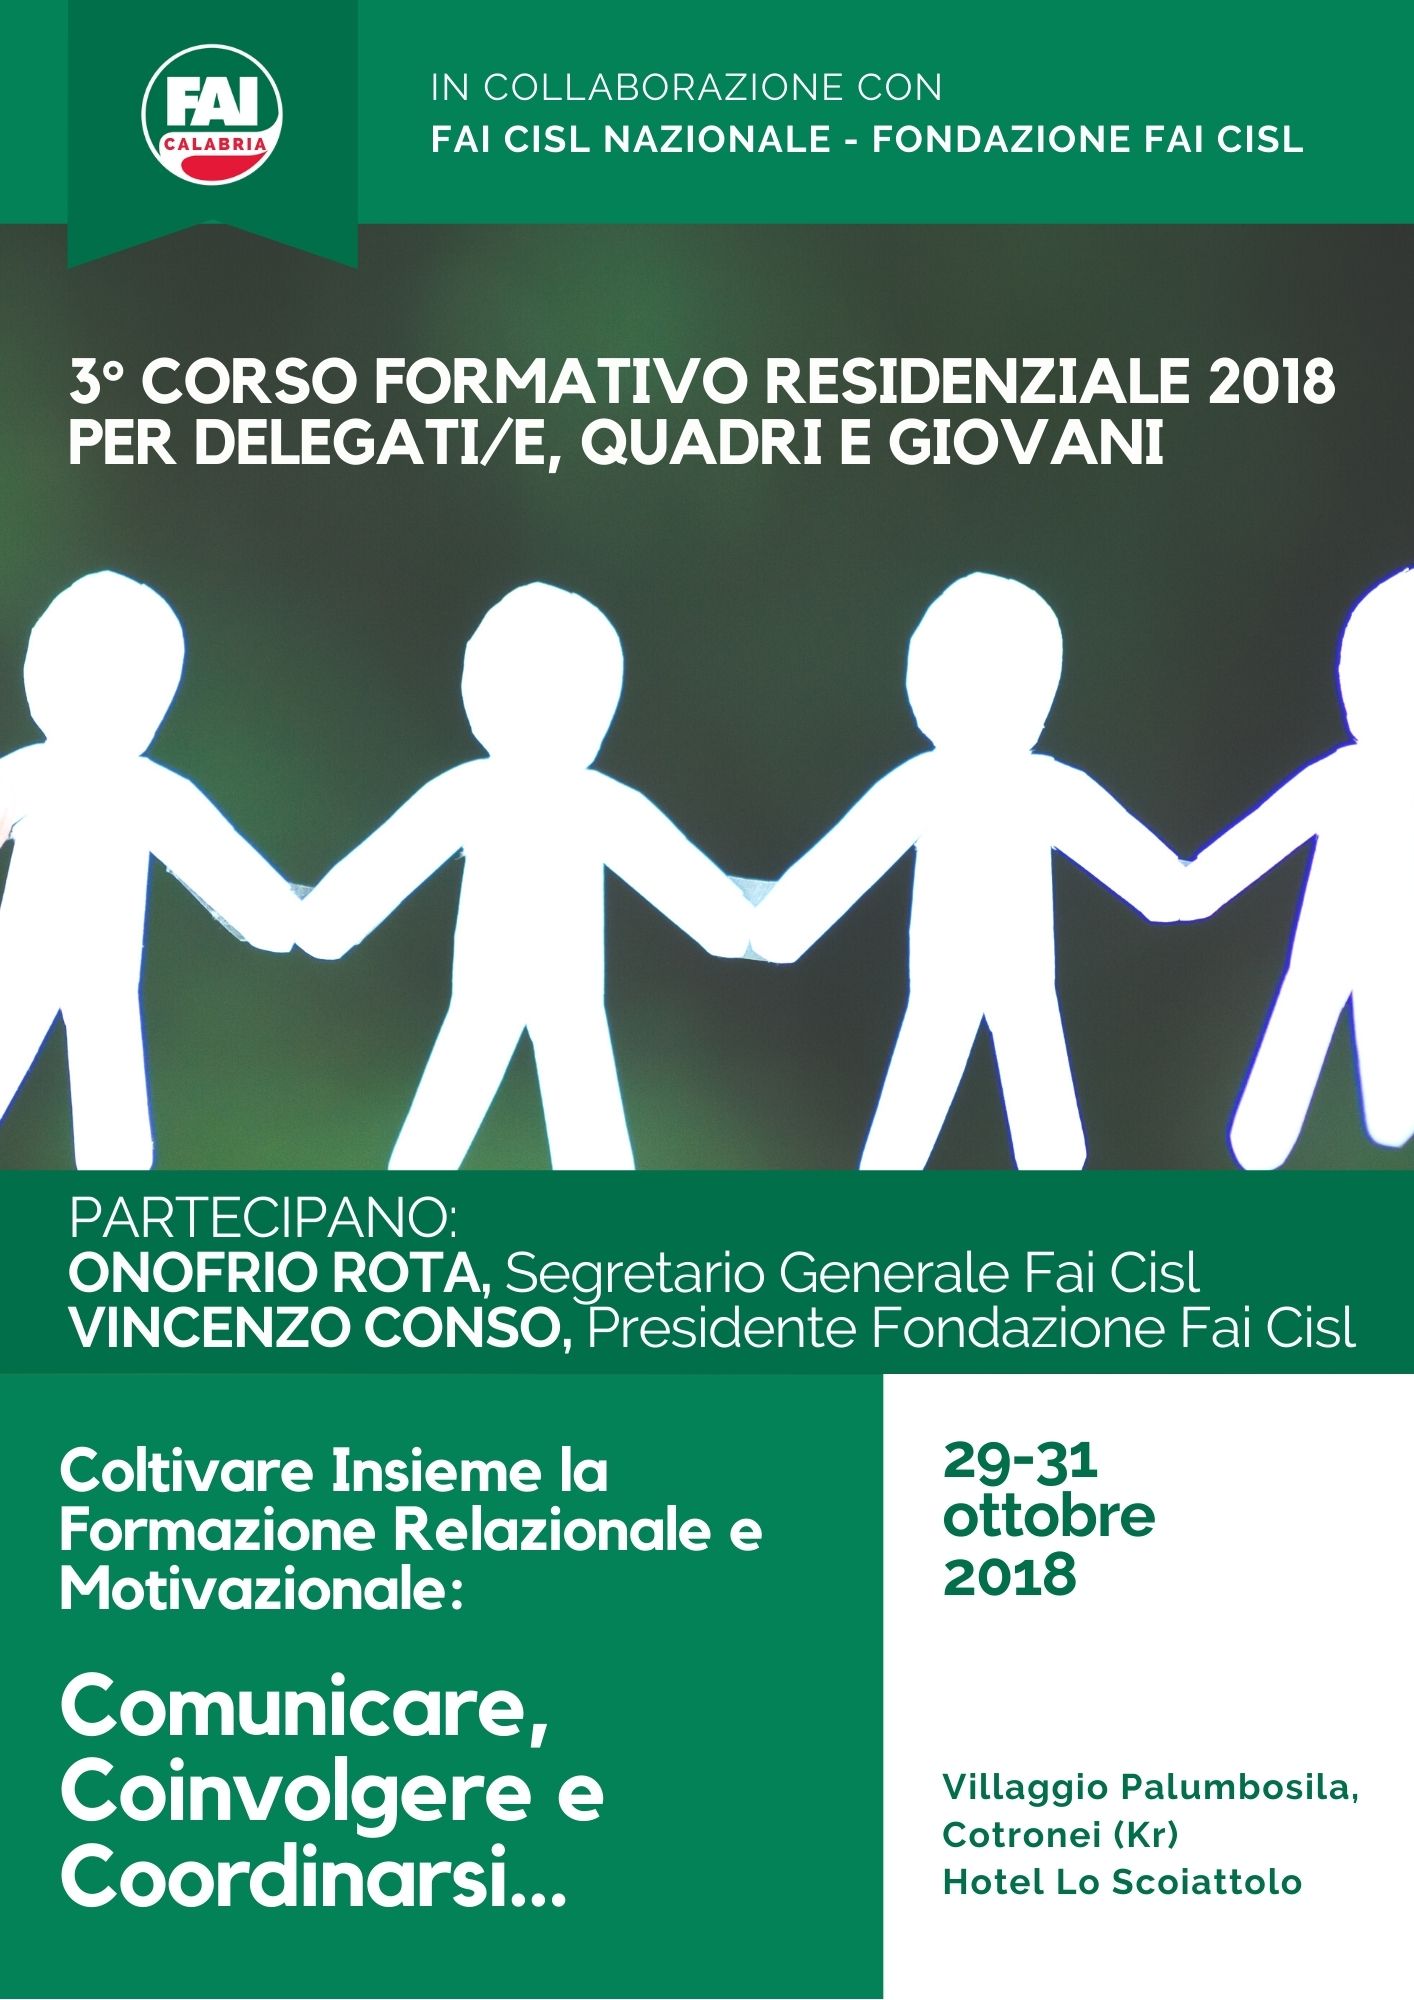 3° CORSO FORMATIVO RESIDENZIALE (29-31 Ottobre 2018)